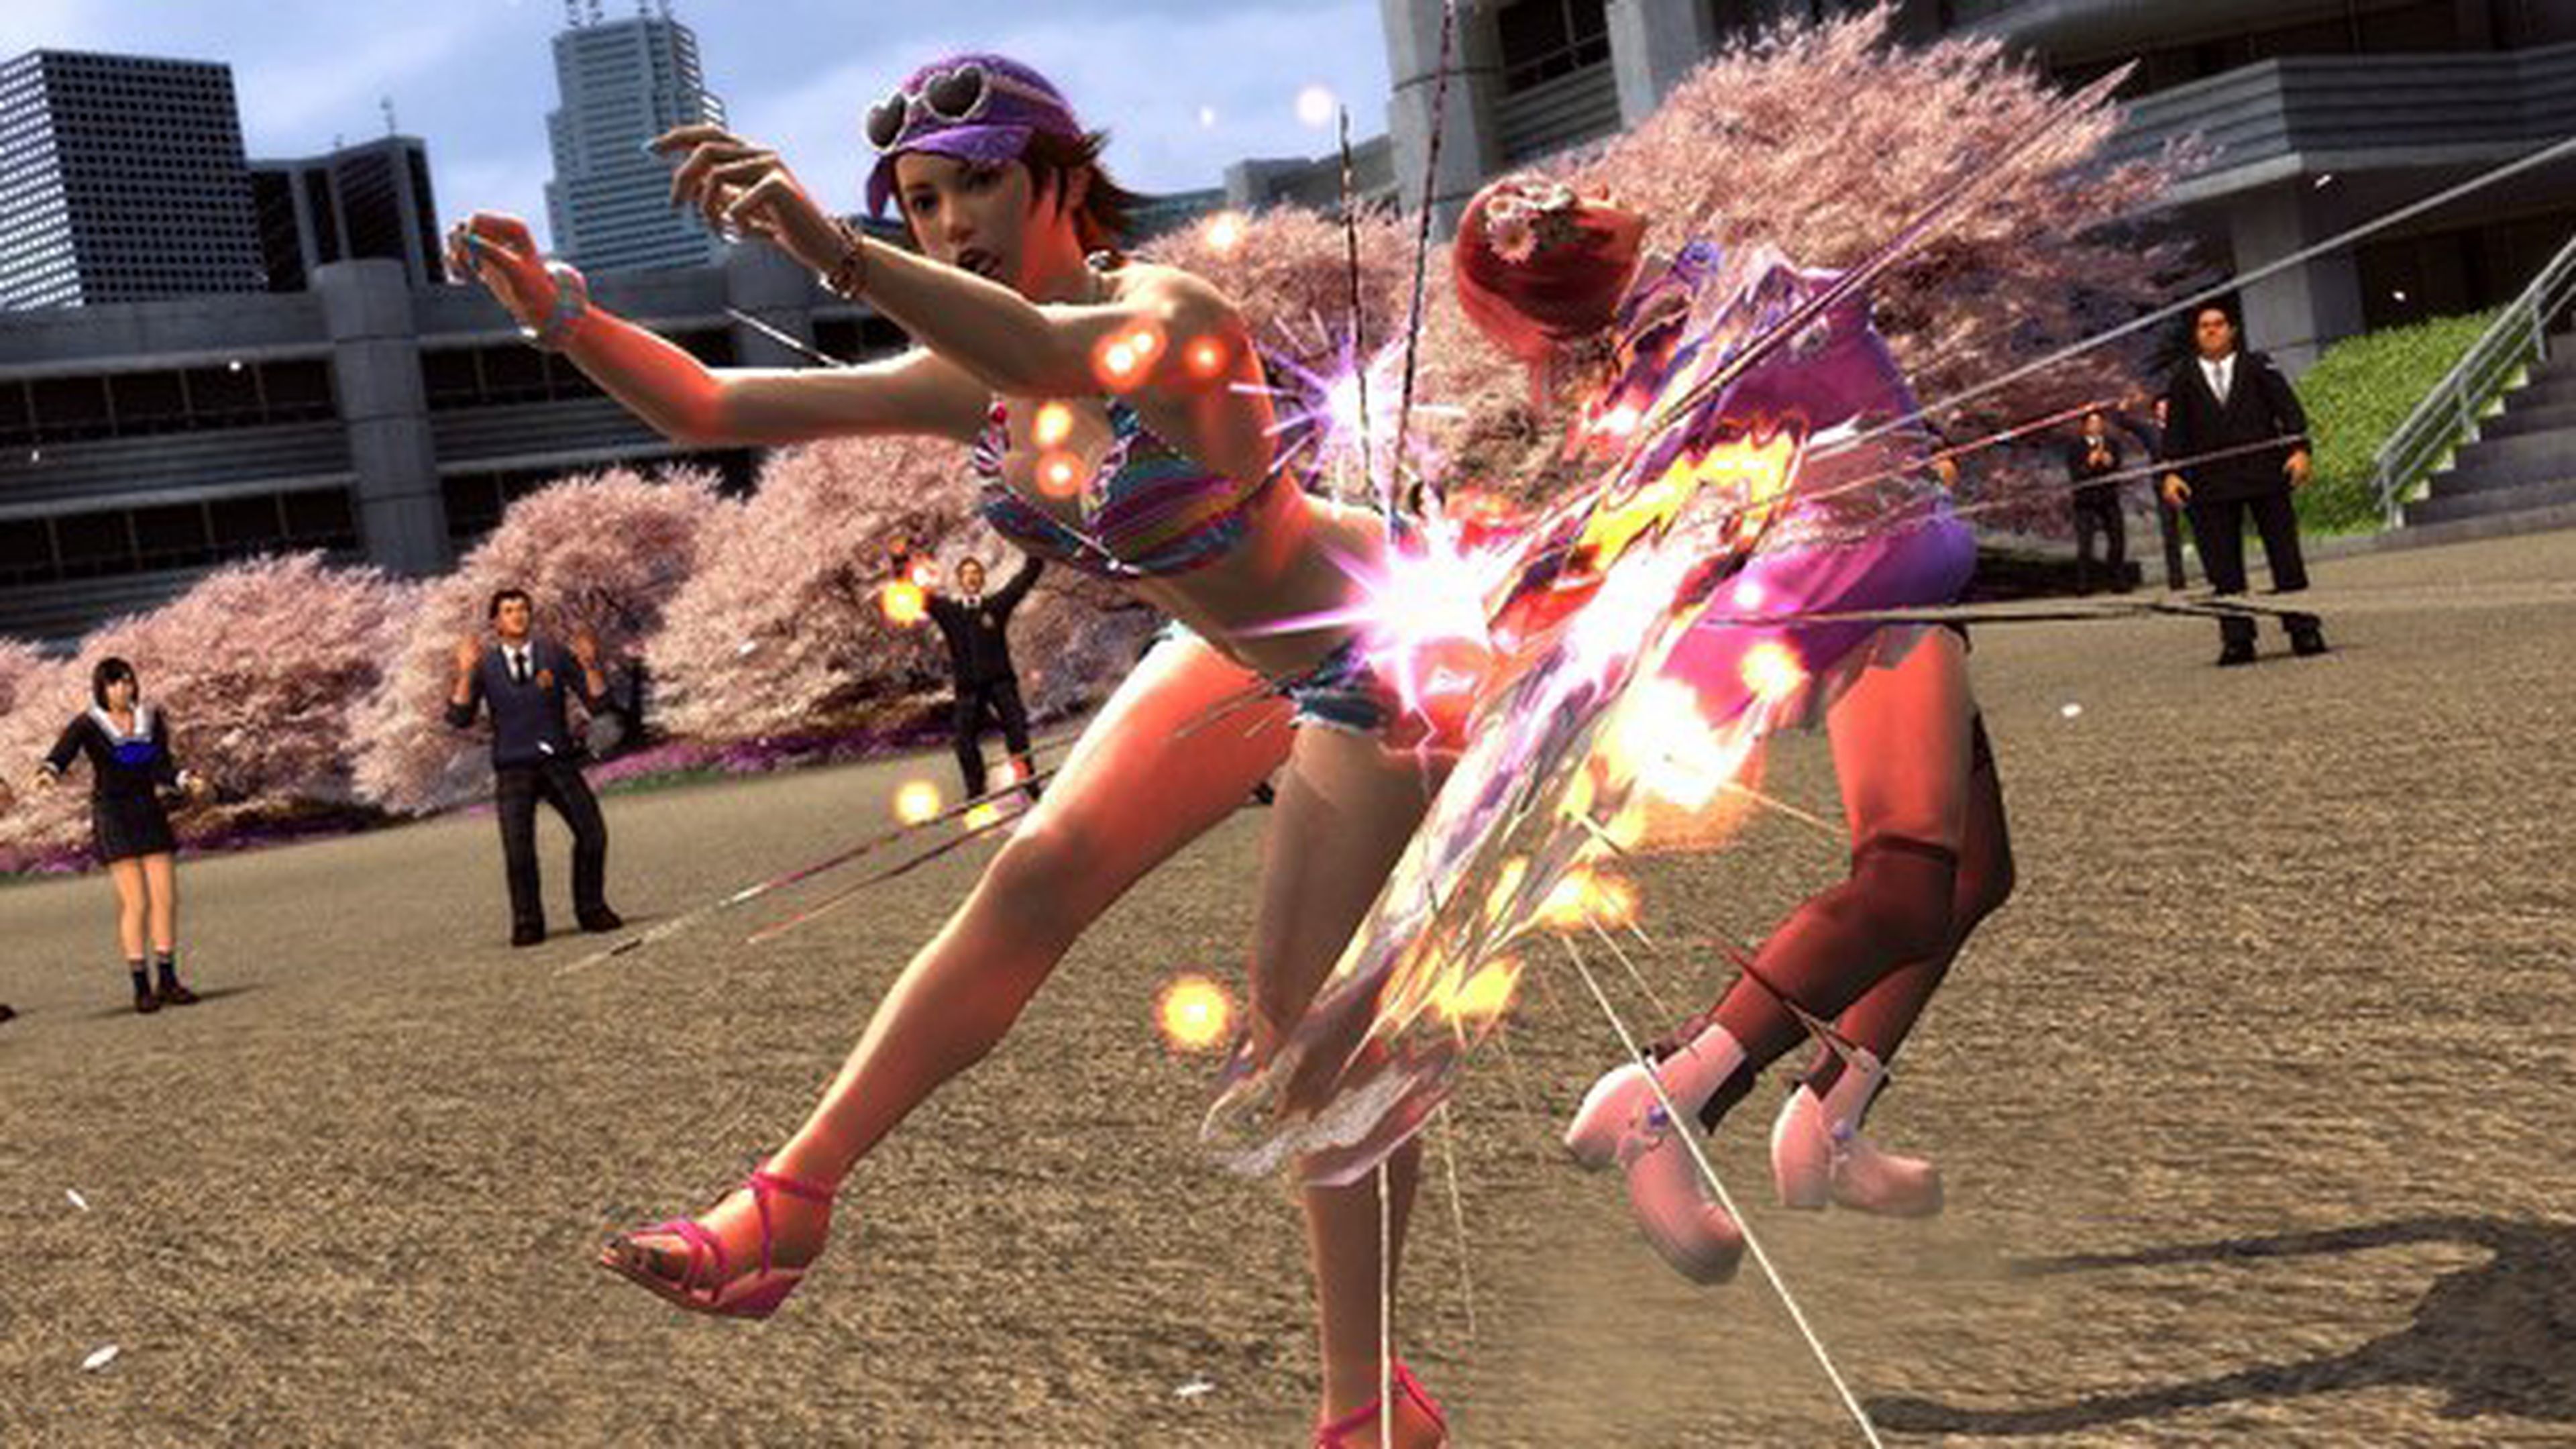 DLC gratuito para Tekken Tag Tournament 2 en octubre